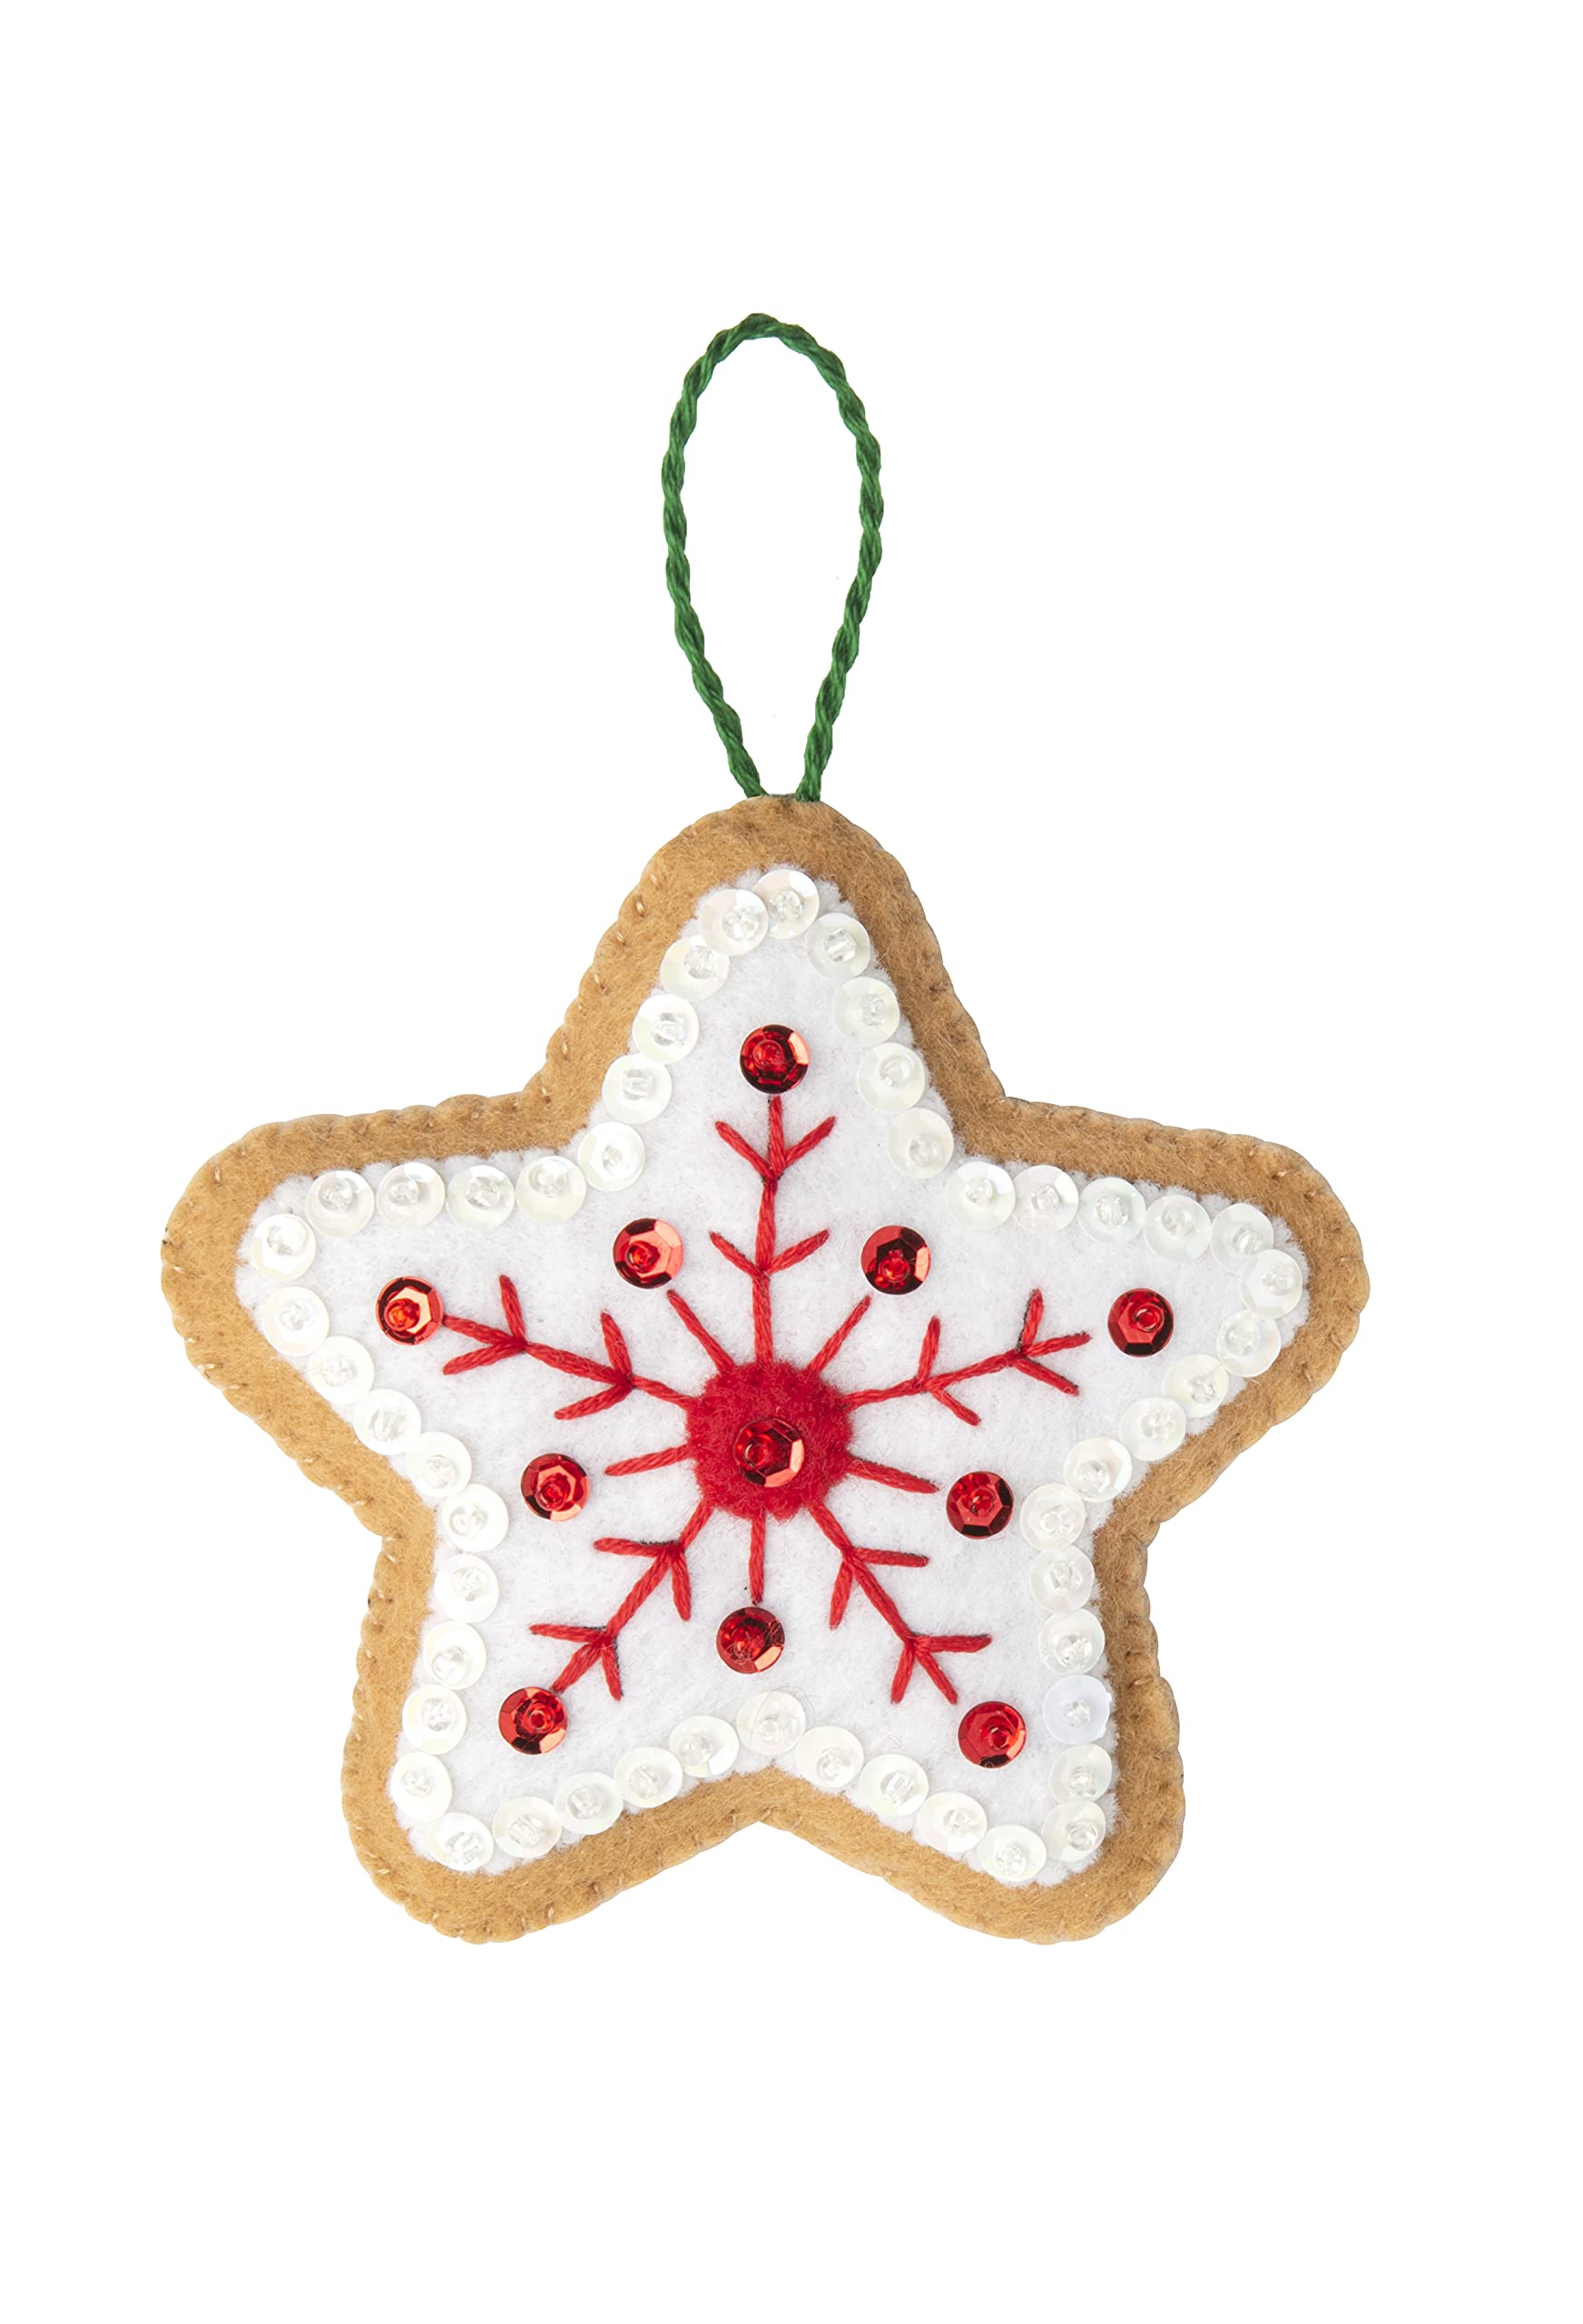 Bucilla Felt Applique 12 Piece Ornament Making Kit, Gingerbread Santa, Perfect for DIY Arts and Crafts, 89301E